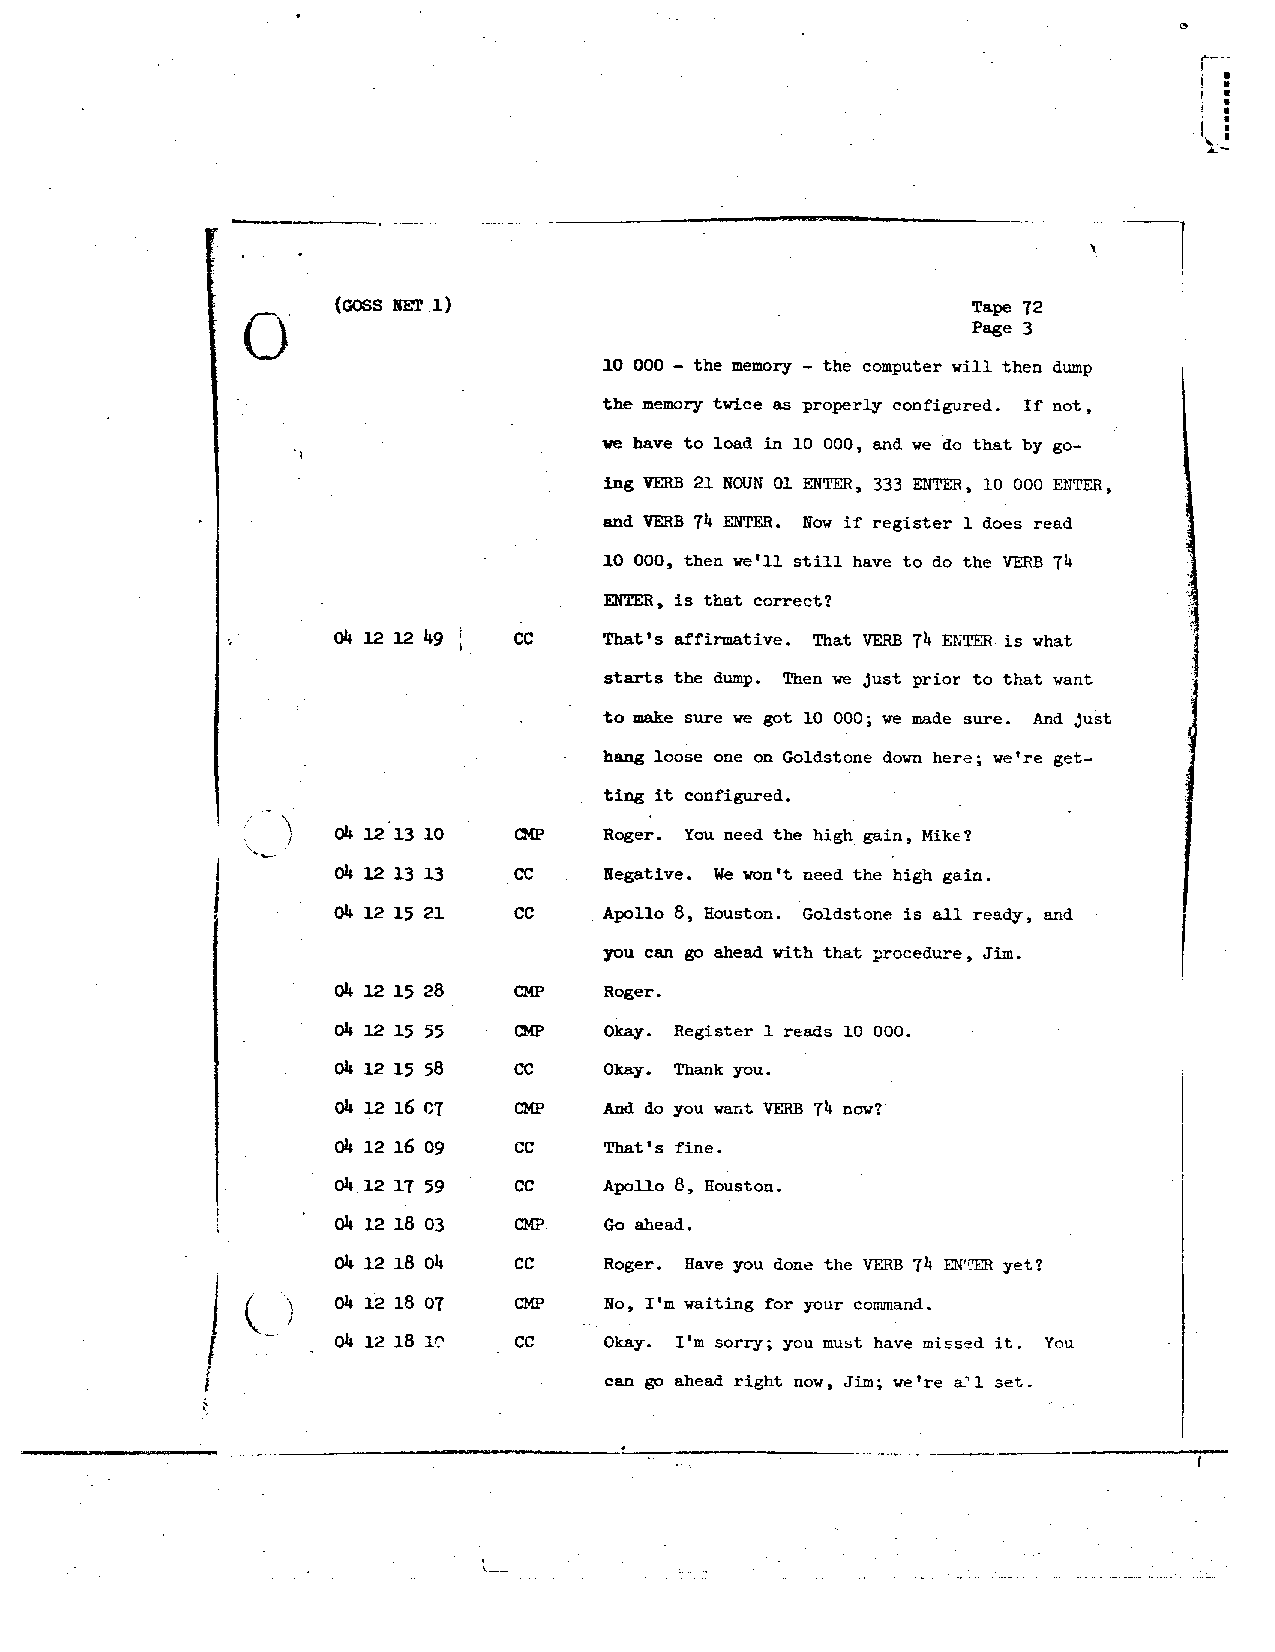 Page 576 of Apollo 8’s original transcript